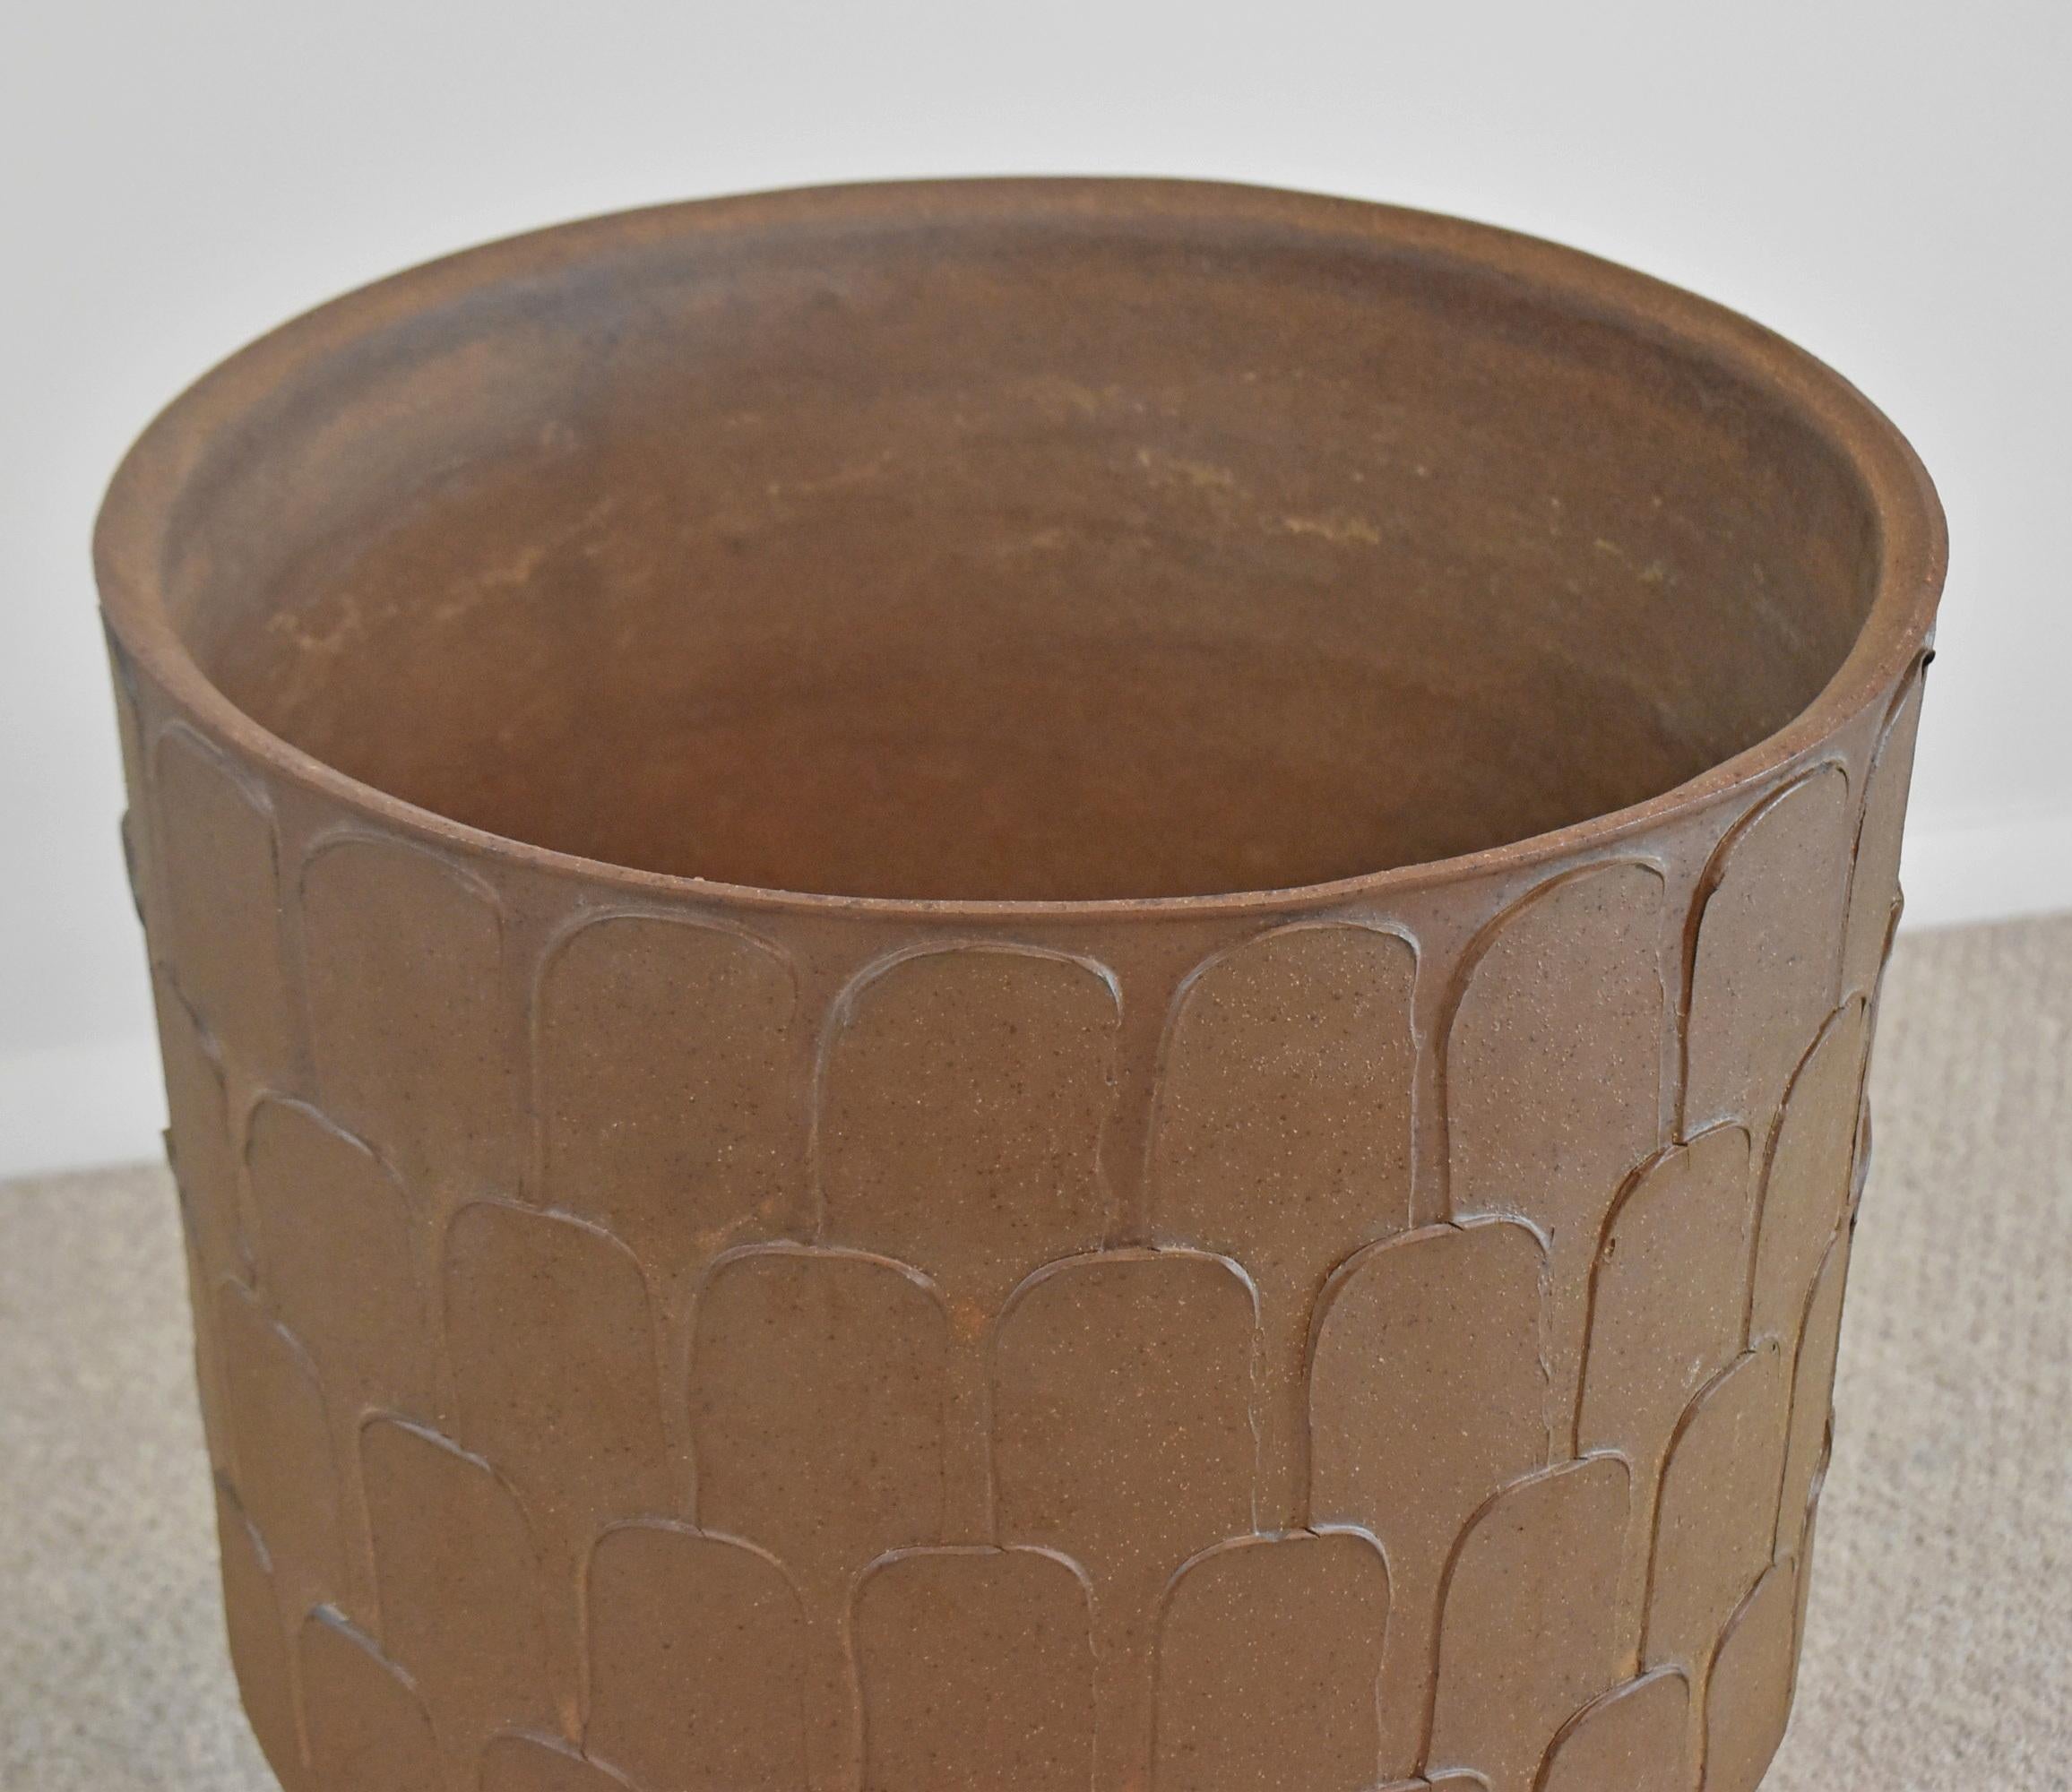 Vase de sol à piédestal de David Cressey pour Architectural Pottery. Circa 1960-1969. Grand vase de sol à motif de feuille avec glaçure brune et monté sur un piédestal circulaire par David Cressey (1916-2013). Petit éclat sous la lèvre supérieure,